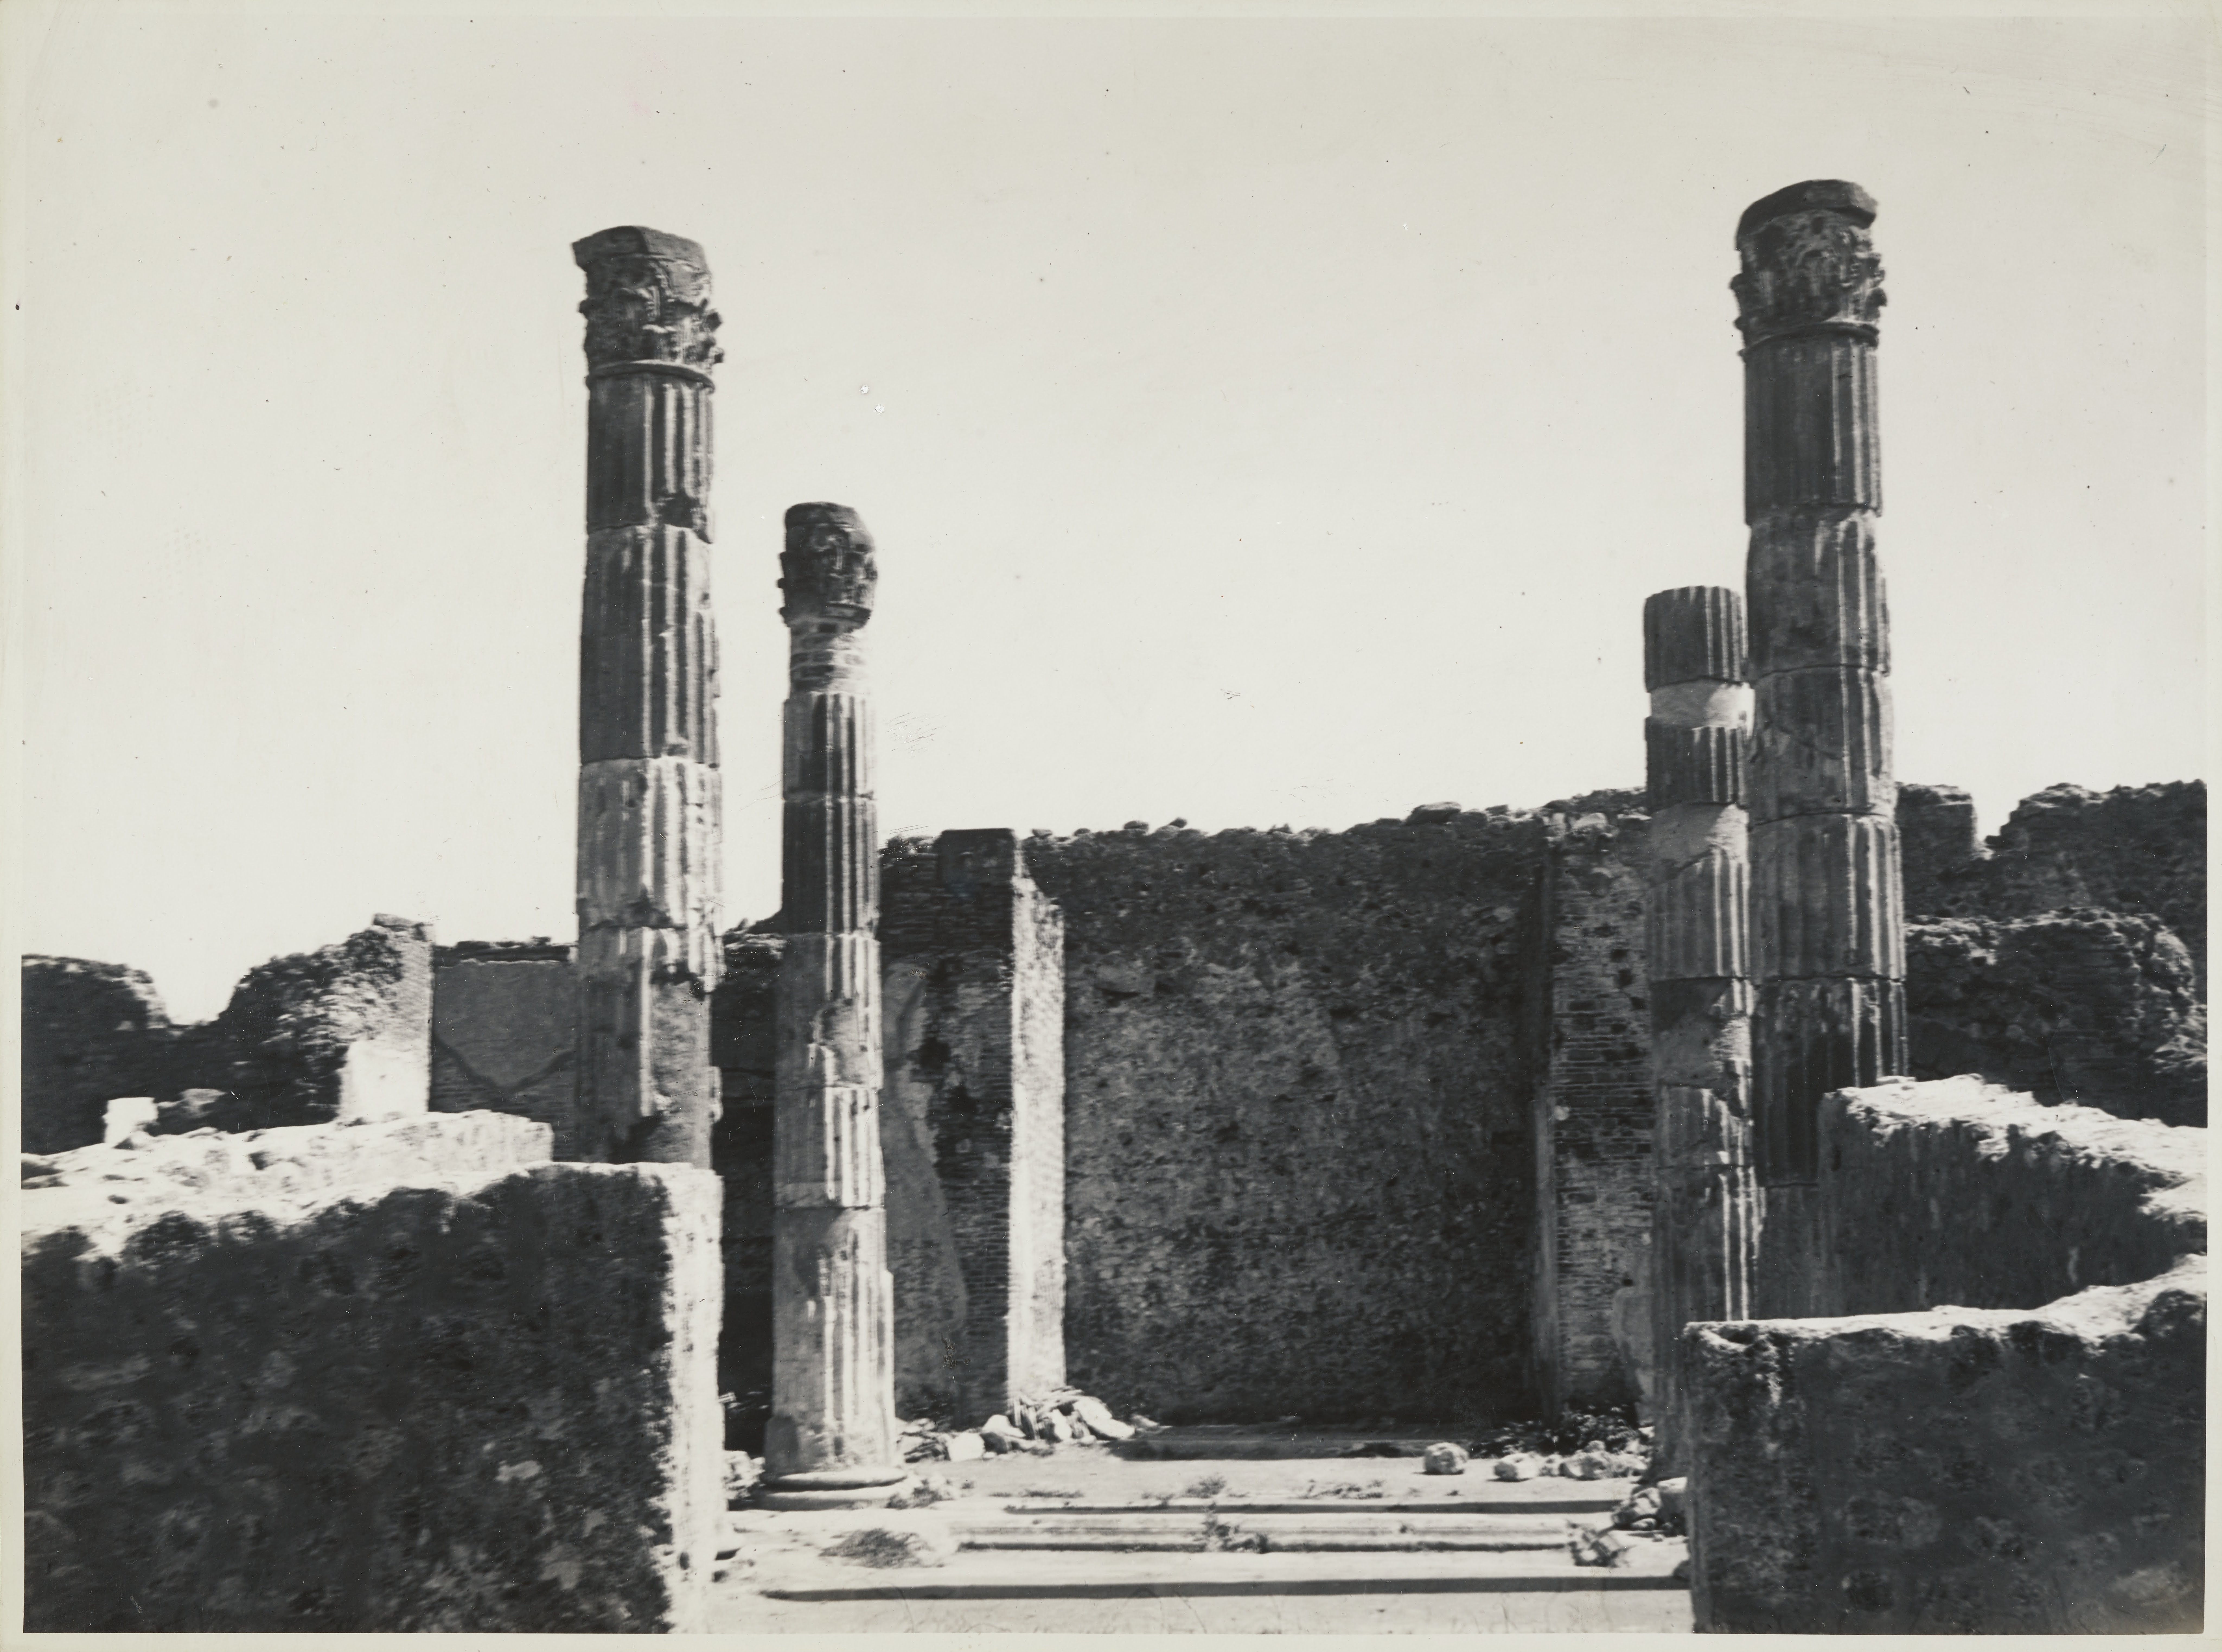 Fotografo non identificato, Pompei - Scavi archeologici, Casa del Fauno, colonne dell'atrio dopo il restauro, 1941-1960, gelatina ai sali d'argento, MPI6059590